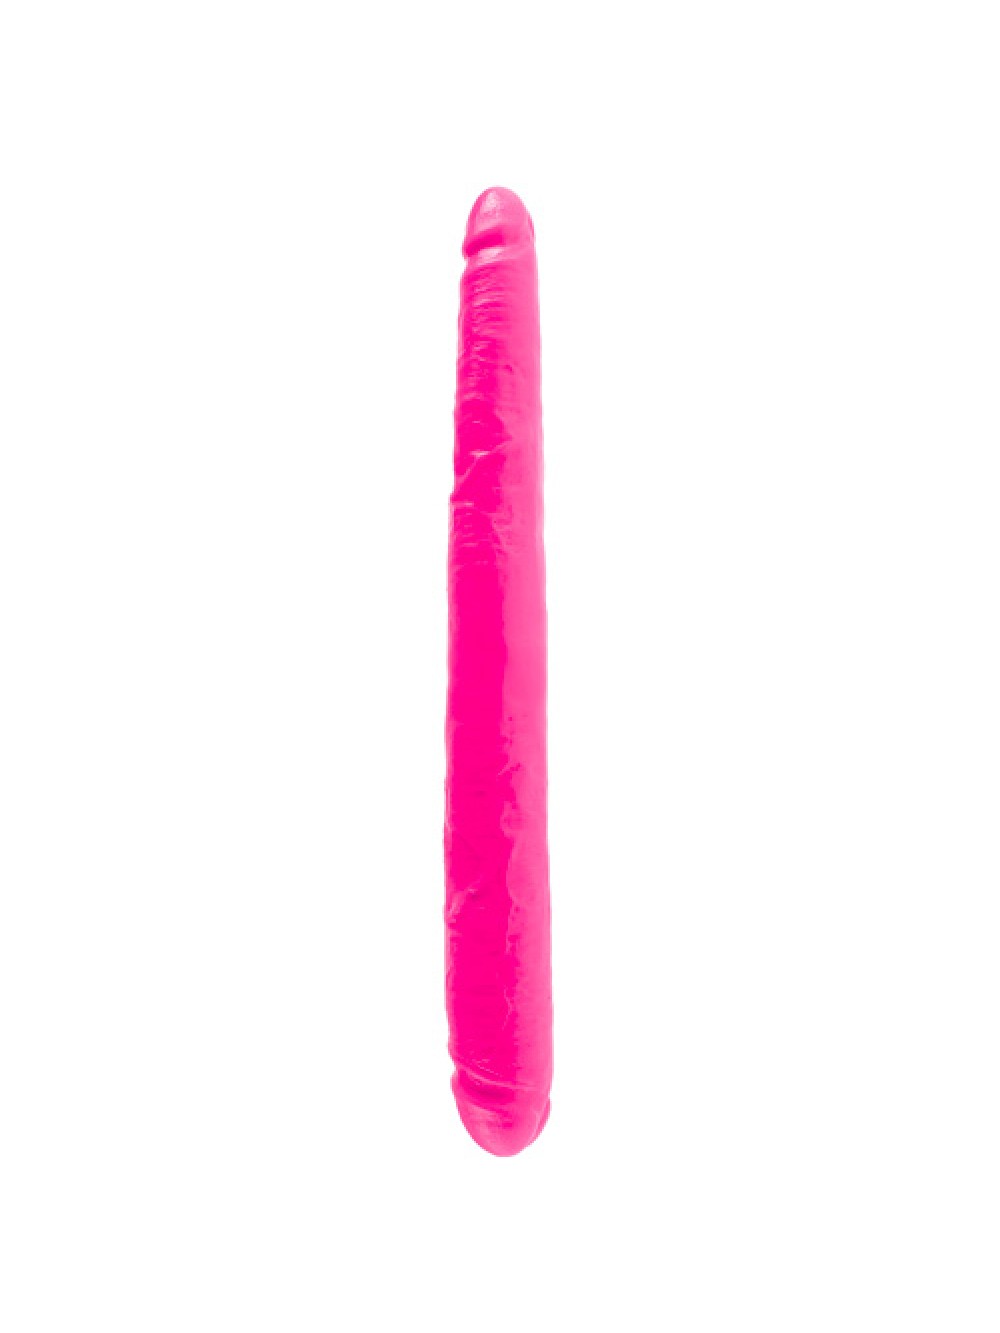 Dillio 16 pollici di colore rosa doppio dildo